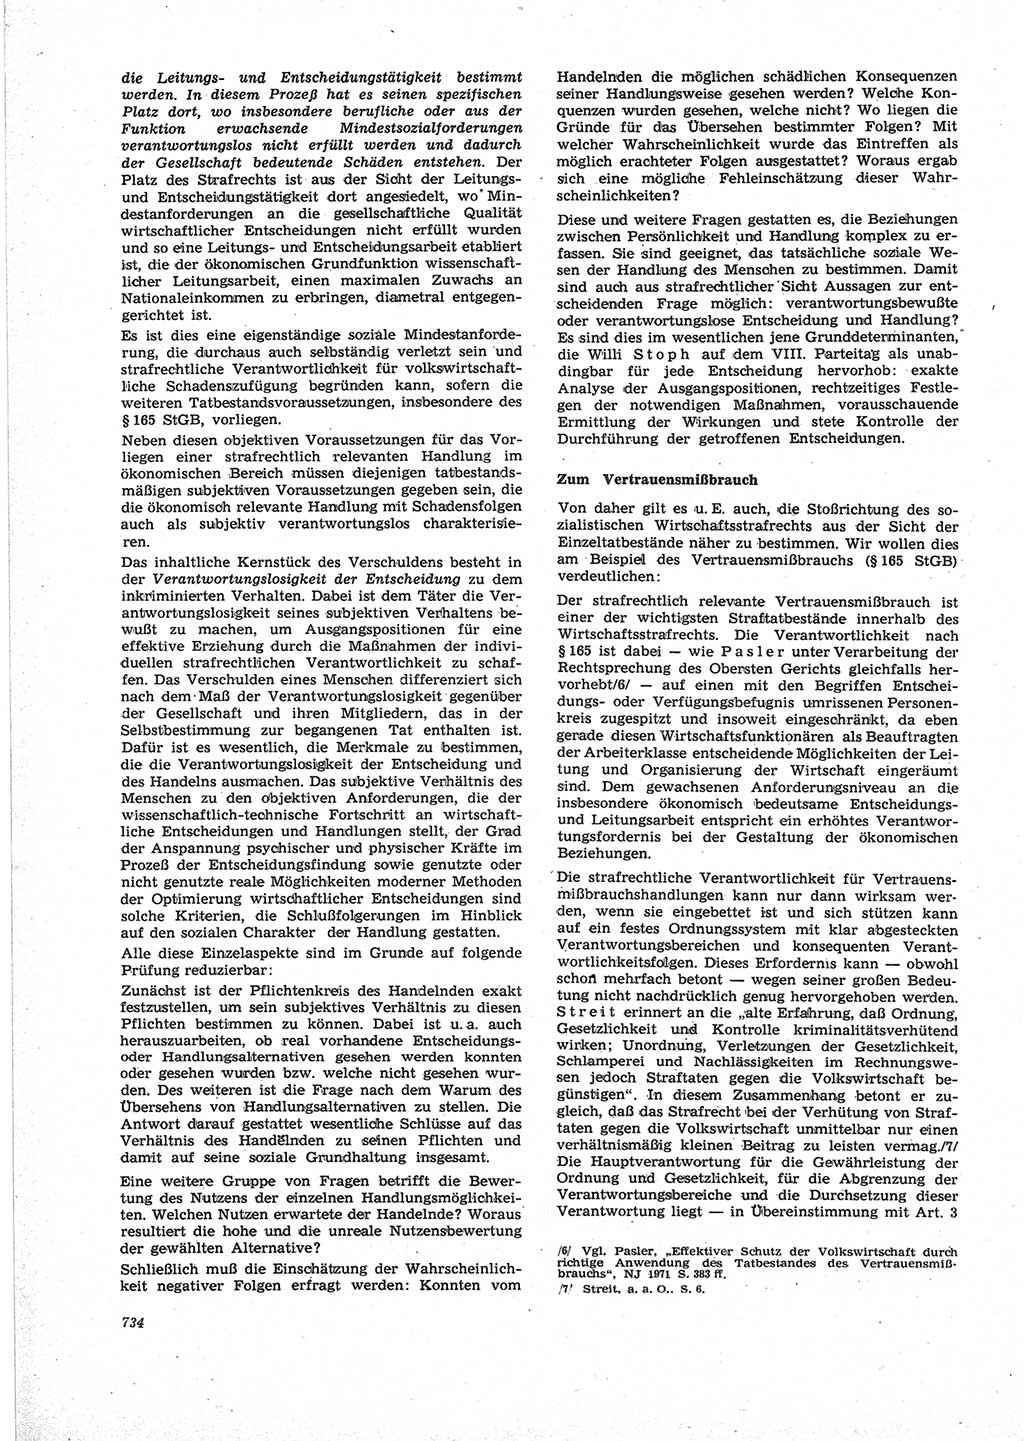 Neue Justiz (NJ), Zeitschrift für Recht und Rechtswissenschaft [Deutsche Demokratische Republik (DDR)], 25. Jahrgang 1971, Seite 734 (NJ DDR 1971, S. 734)